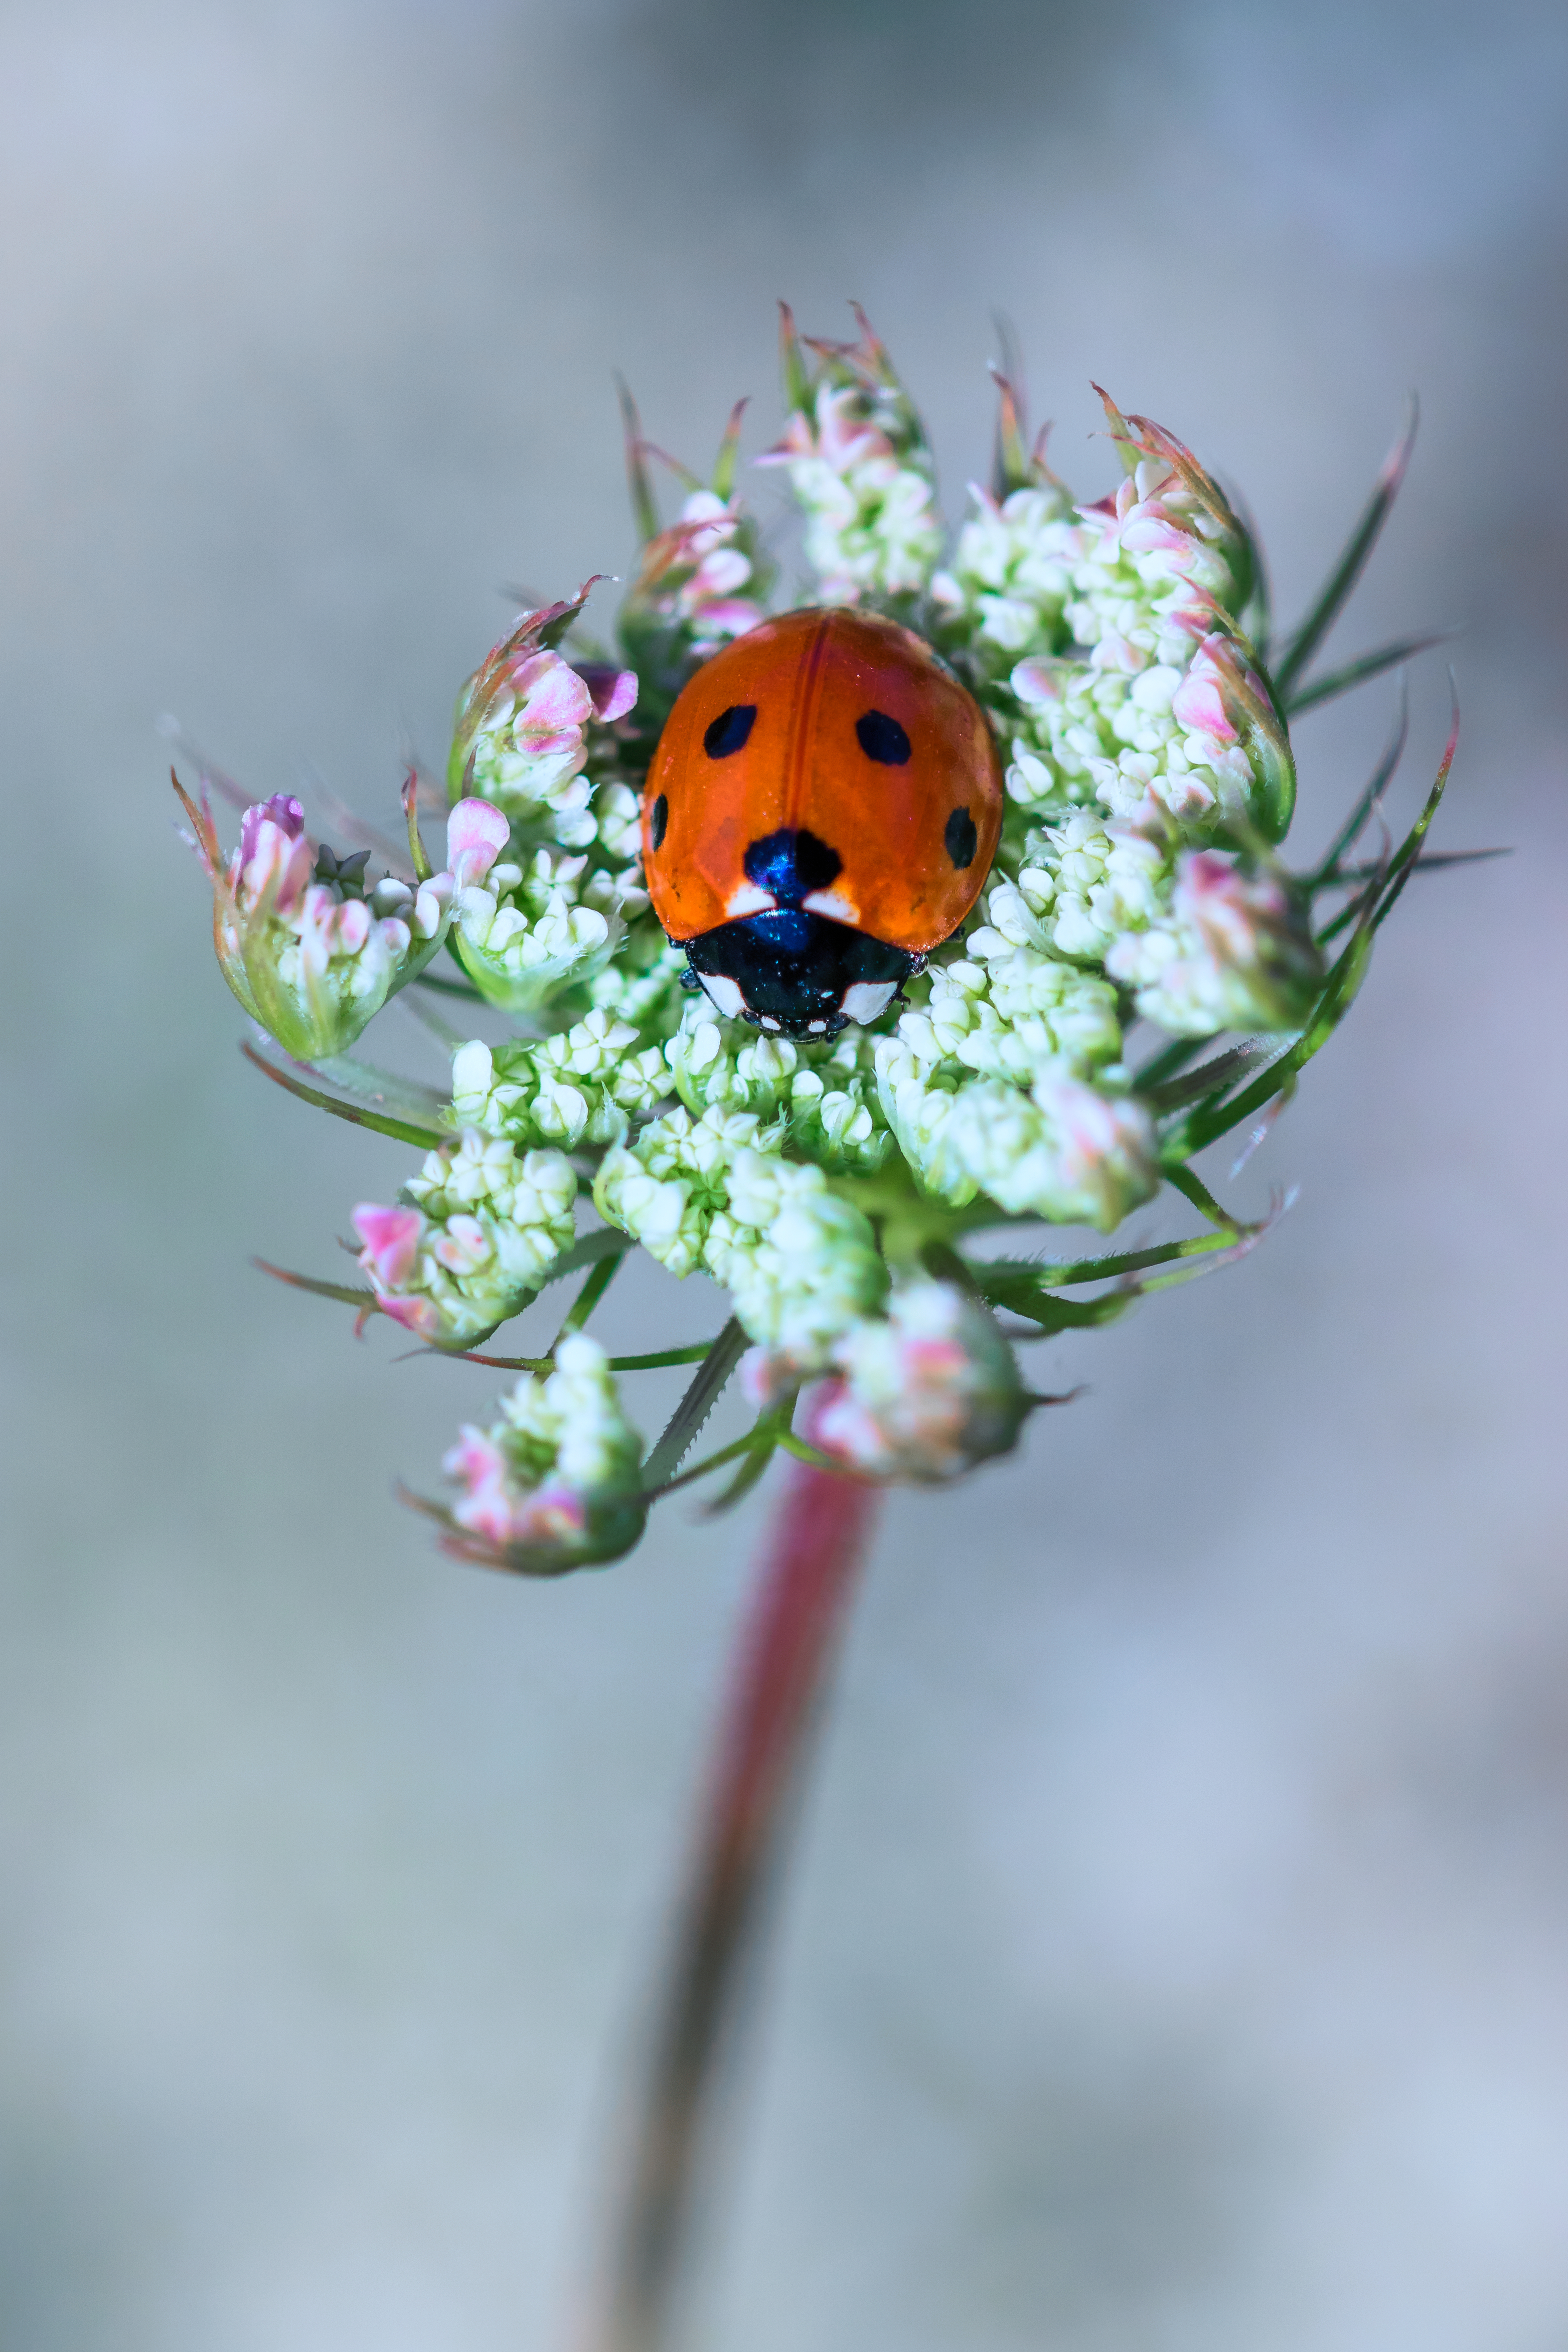 Siebenpunkt-Marienkäfer auf einer weißen Blüte sitzend